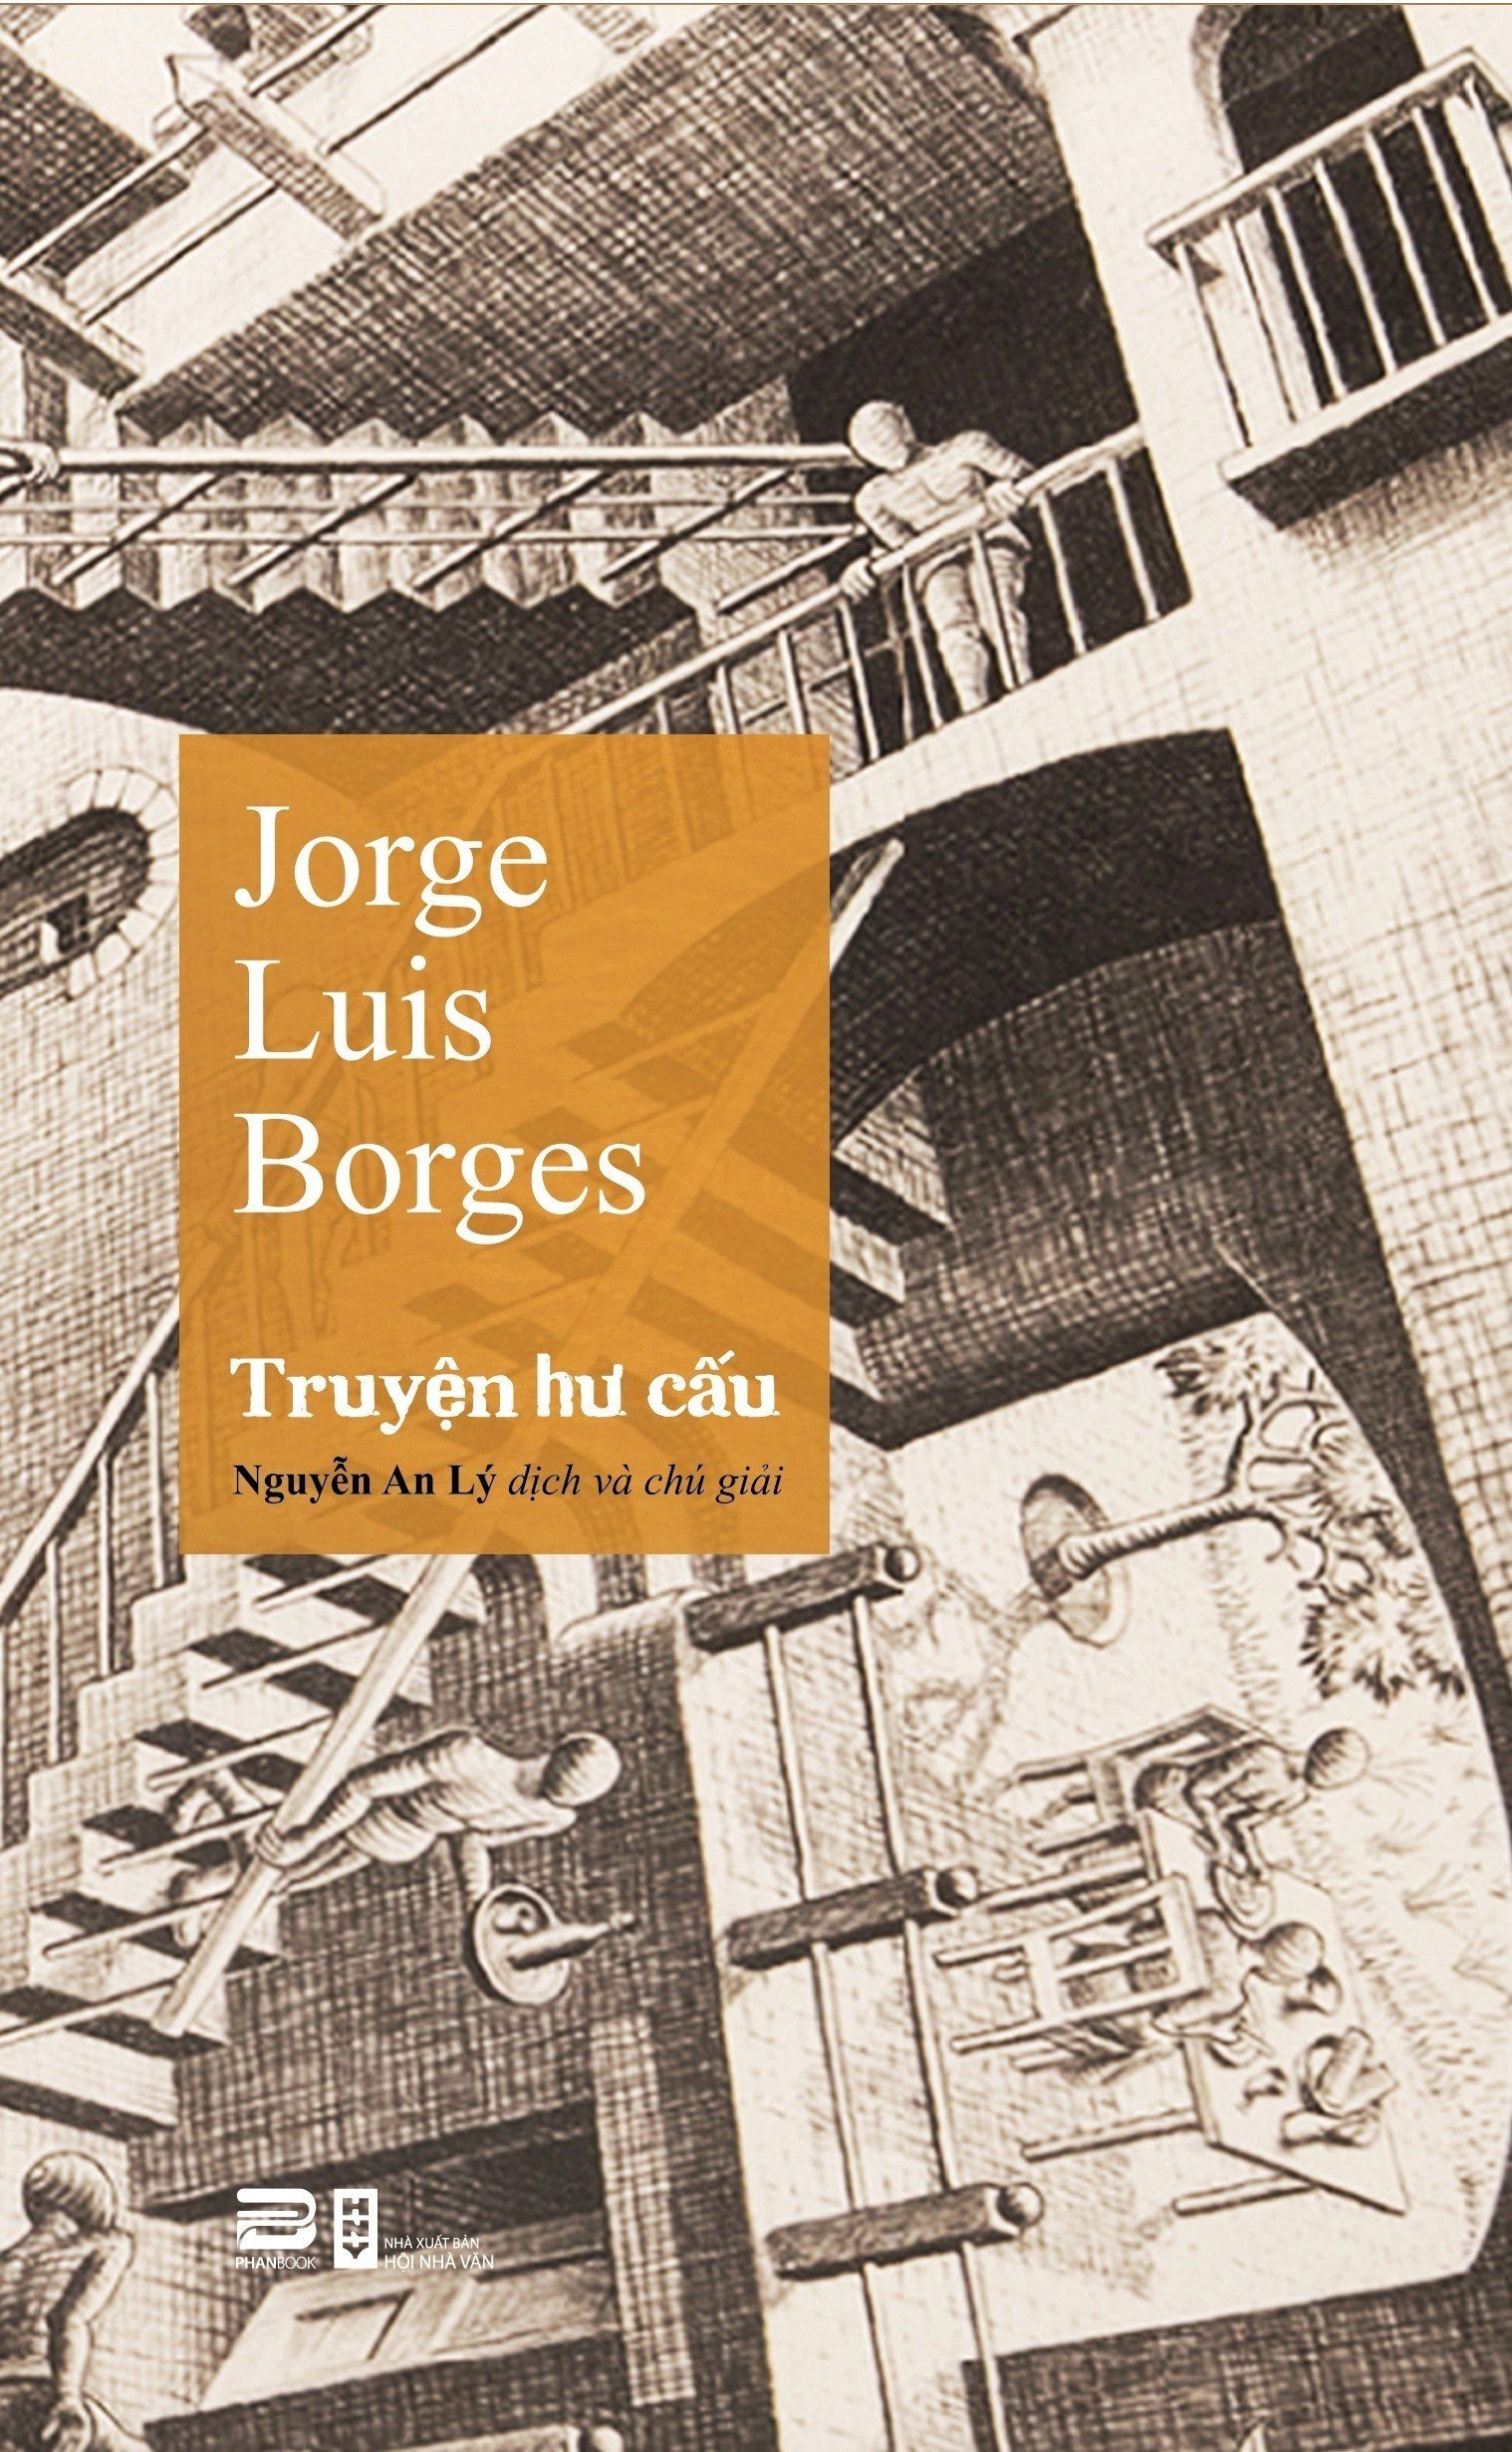 TRUYỆN HƯ CẤU – Jorge Luis Borges – Nguyễn An Lý dịch - Phanbook